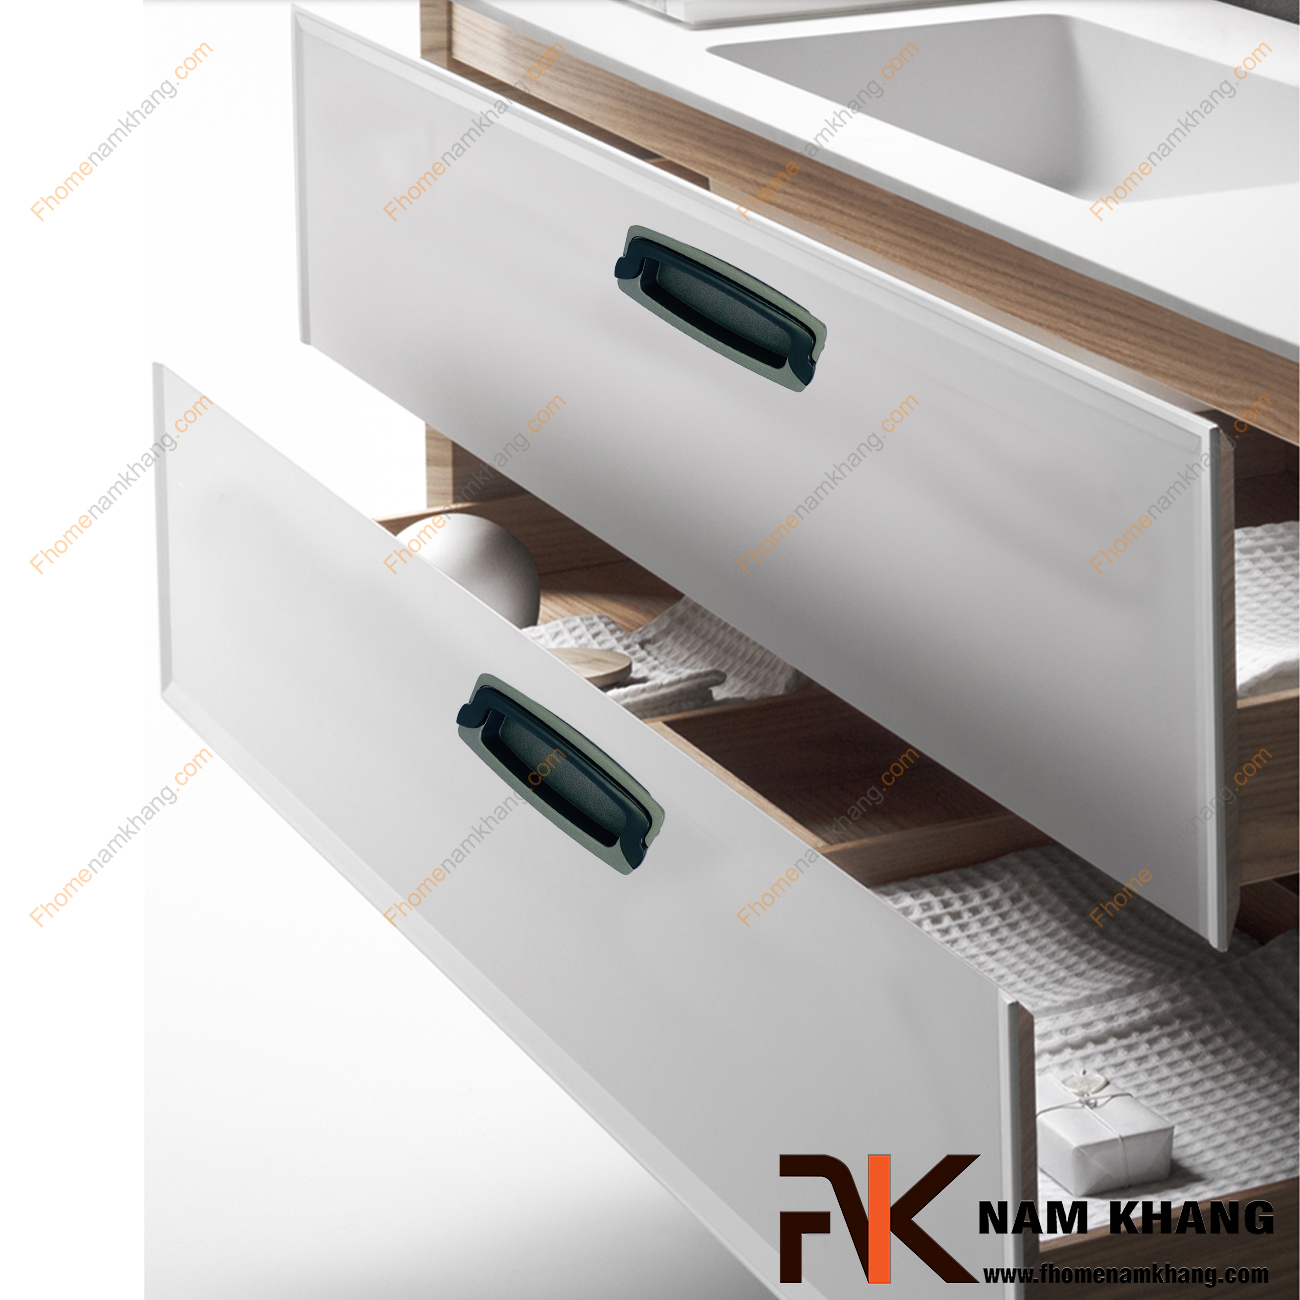 Tay nắm âm tủ màu xám NK064-96XD là loại tay nắm chuyên dùng cho các loại tủ đặt ở những nơi có không gian hạn chế hoặc dùng để nâng cao tính thẫm mỹ của sản phẩm.